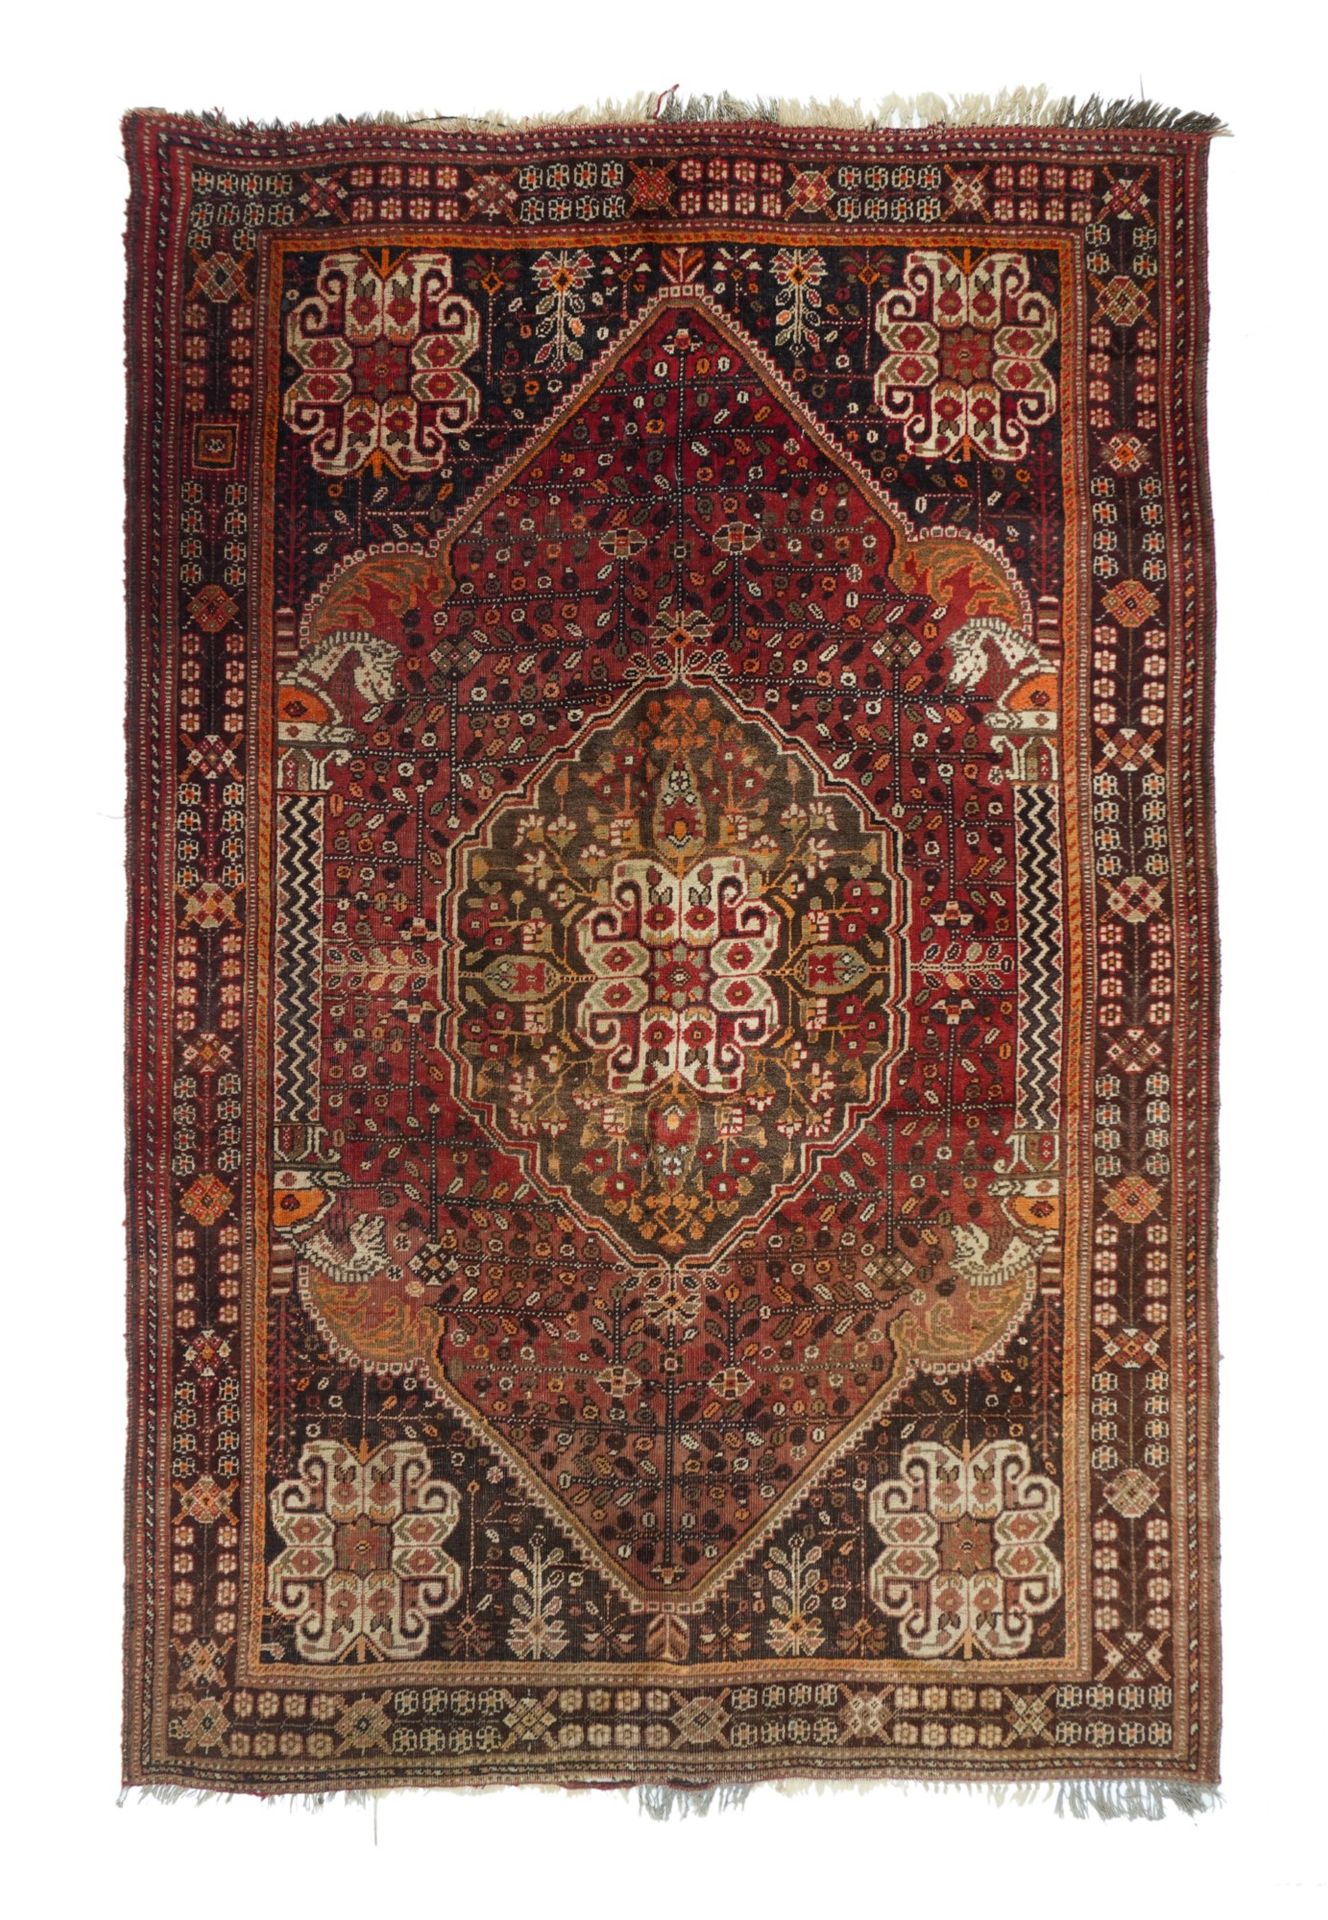 Null Vintage Qashqai Rug, 5'4" x 8'4" ( 1.63 x 2.54 M )